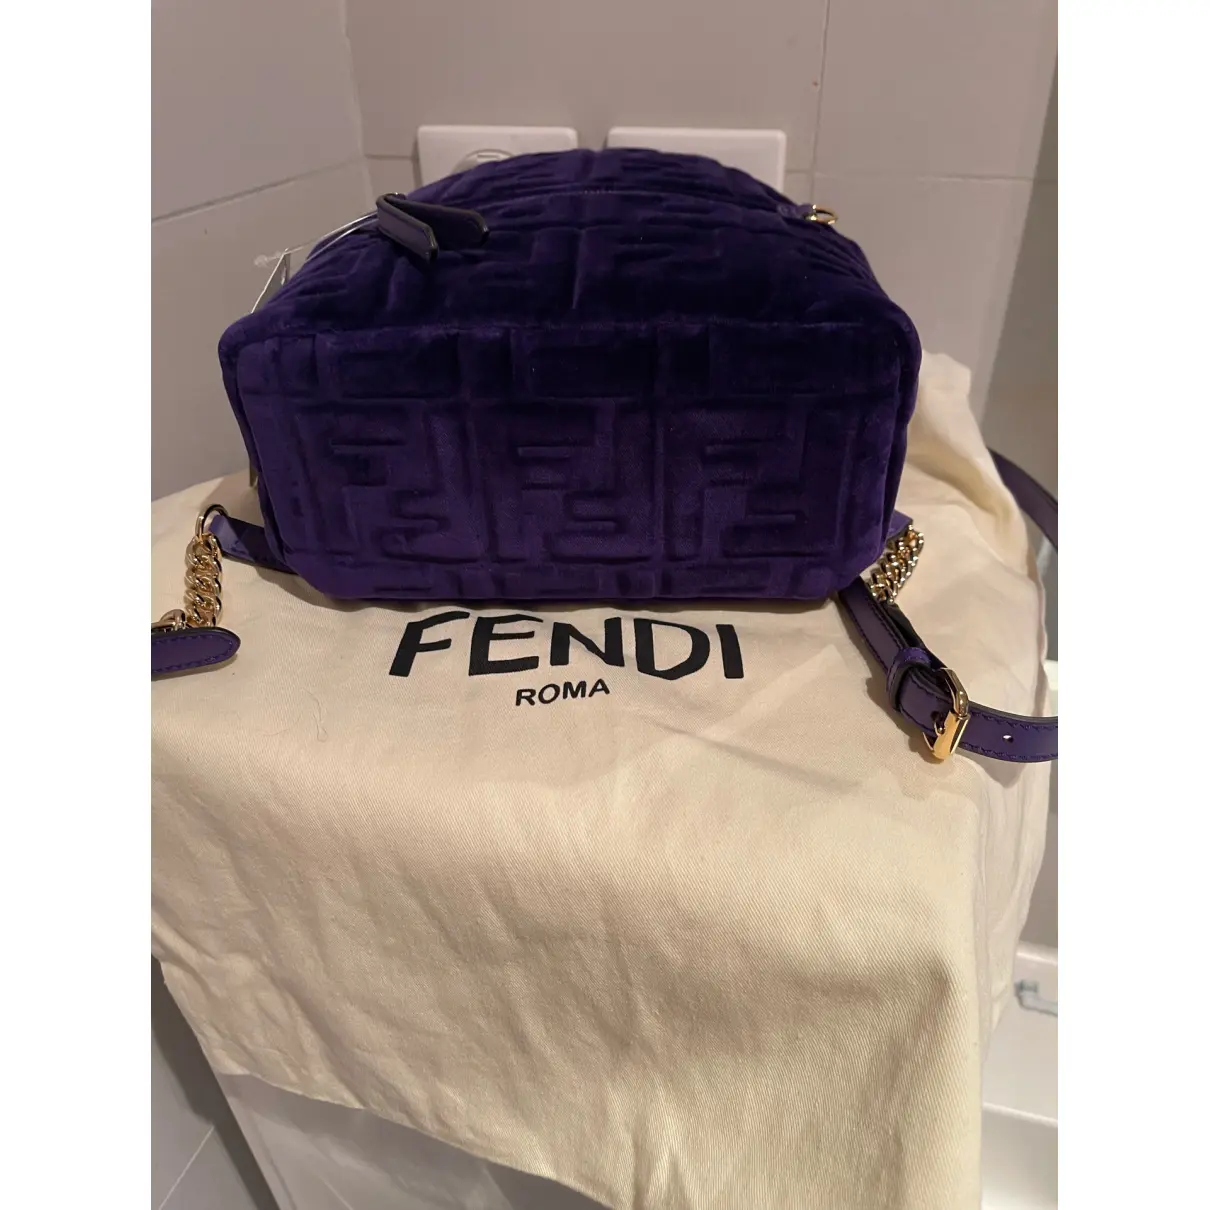 Velvet backpack Fendi